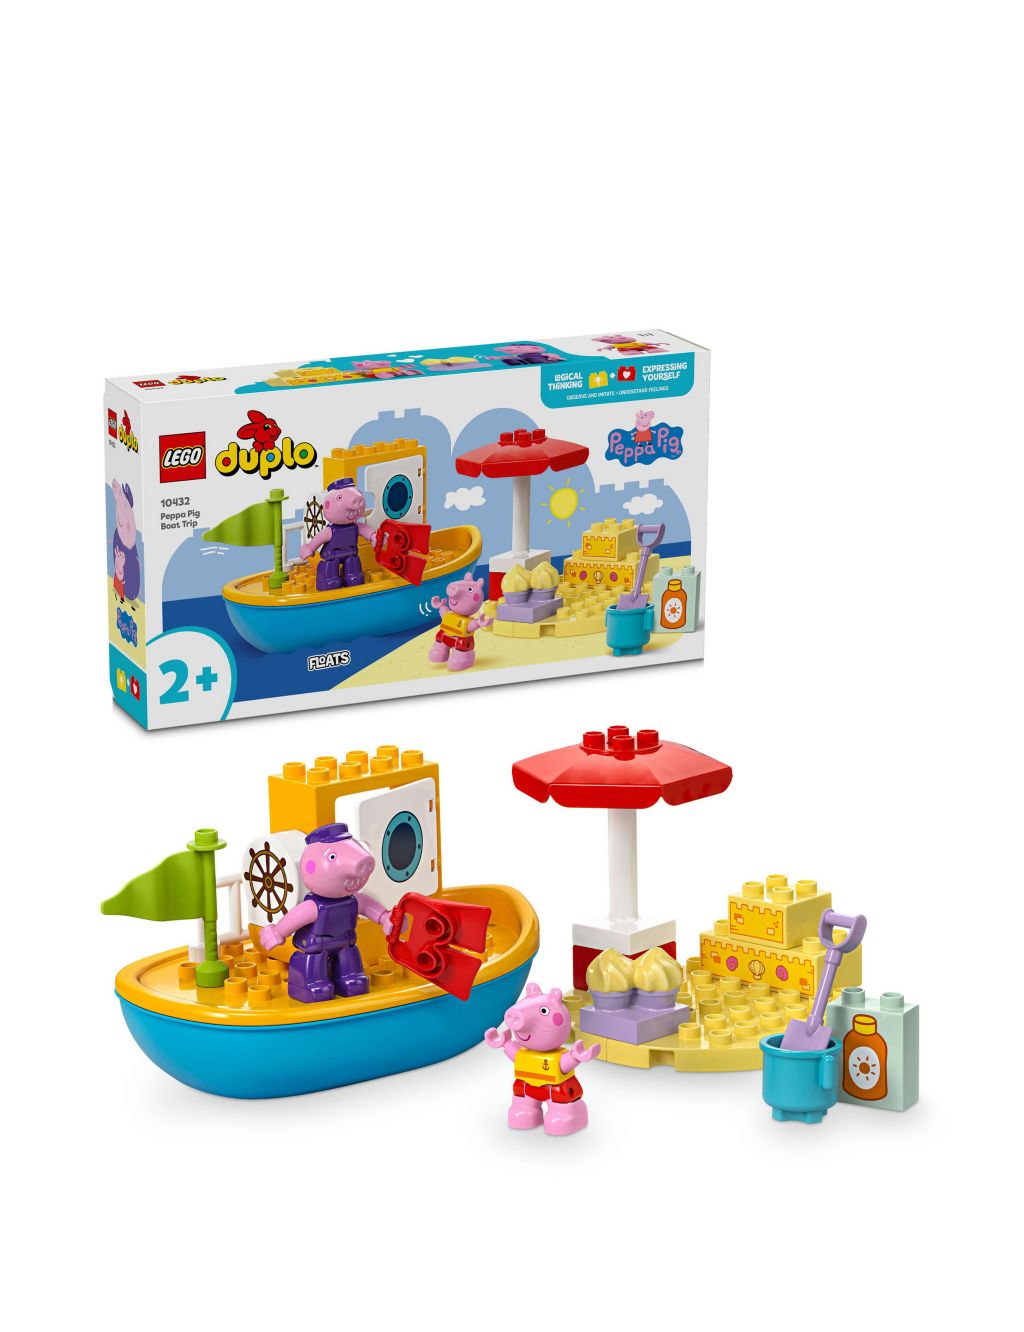 LEGO® DUPLO® Peppa Pig Boat Trip Playset 10432 (2+ Yrs)